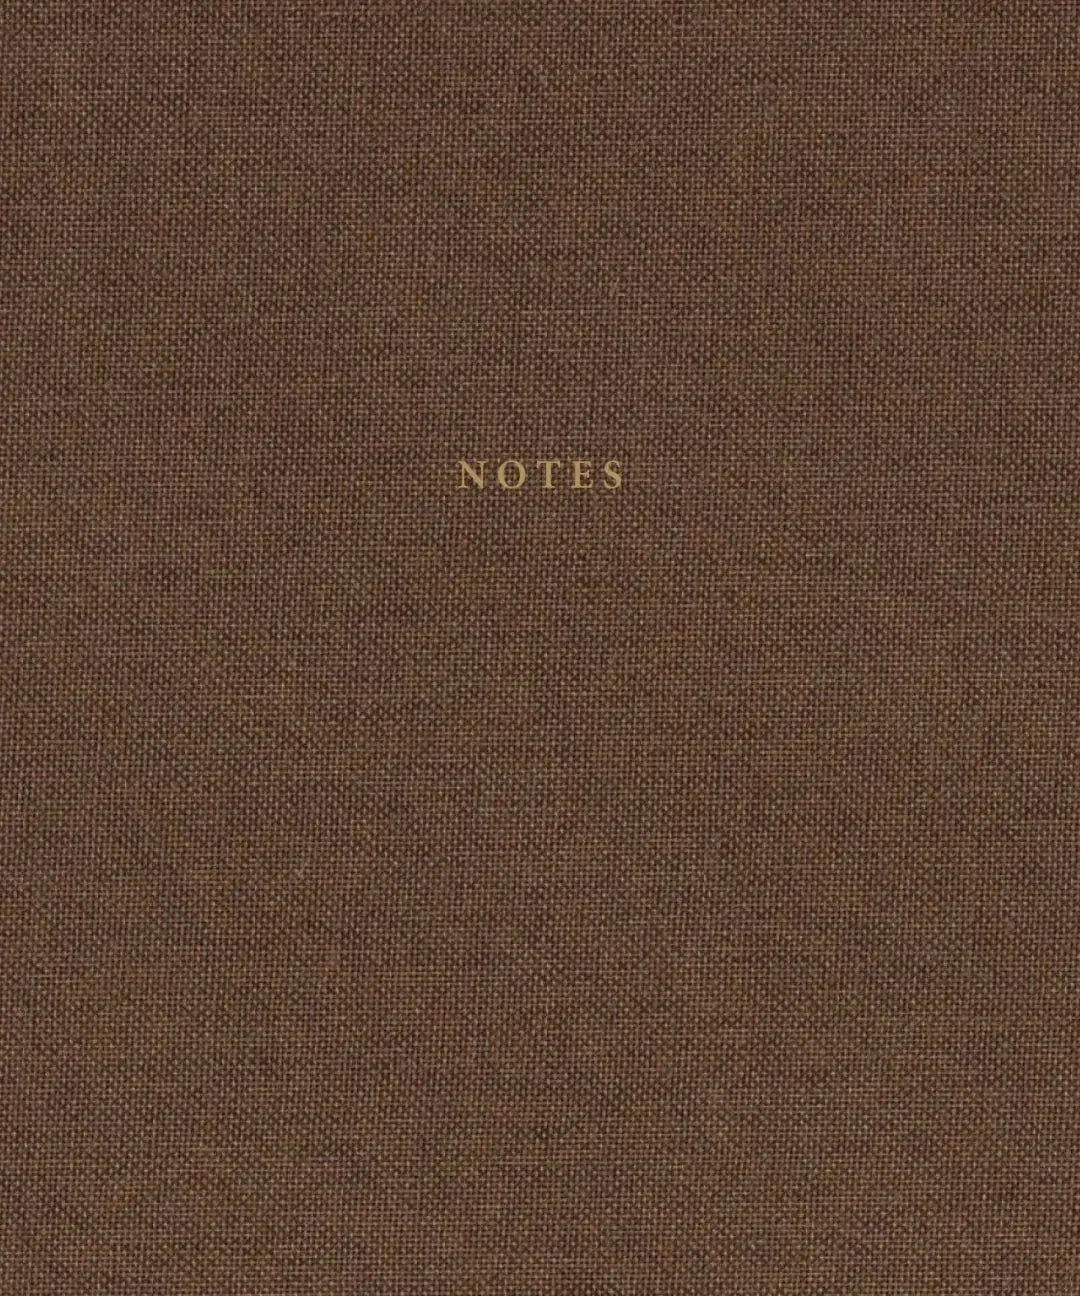 Brown Linen & Golden Notebook